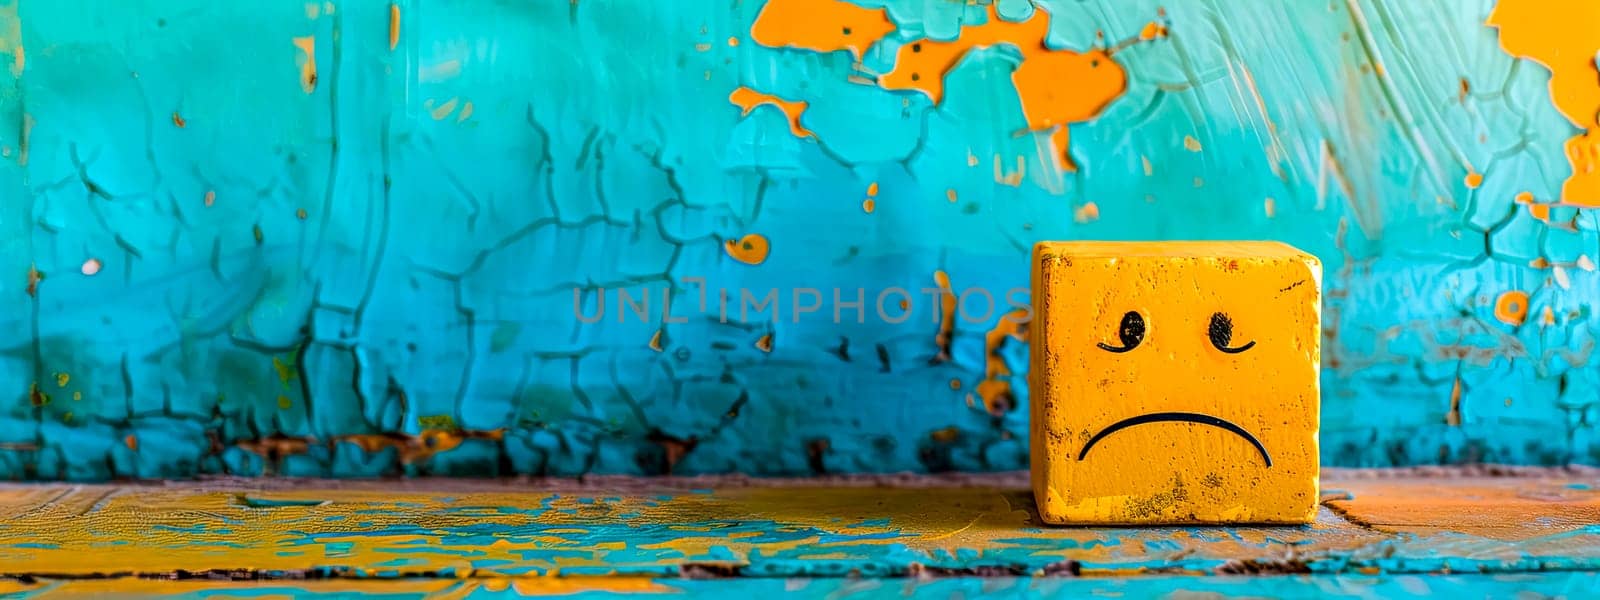 Sad Yellow Emoji Cube on Cracked Turquoise Paint Background by Edophoto